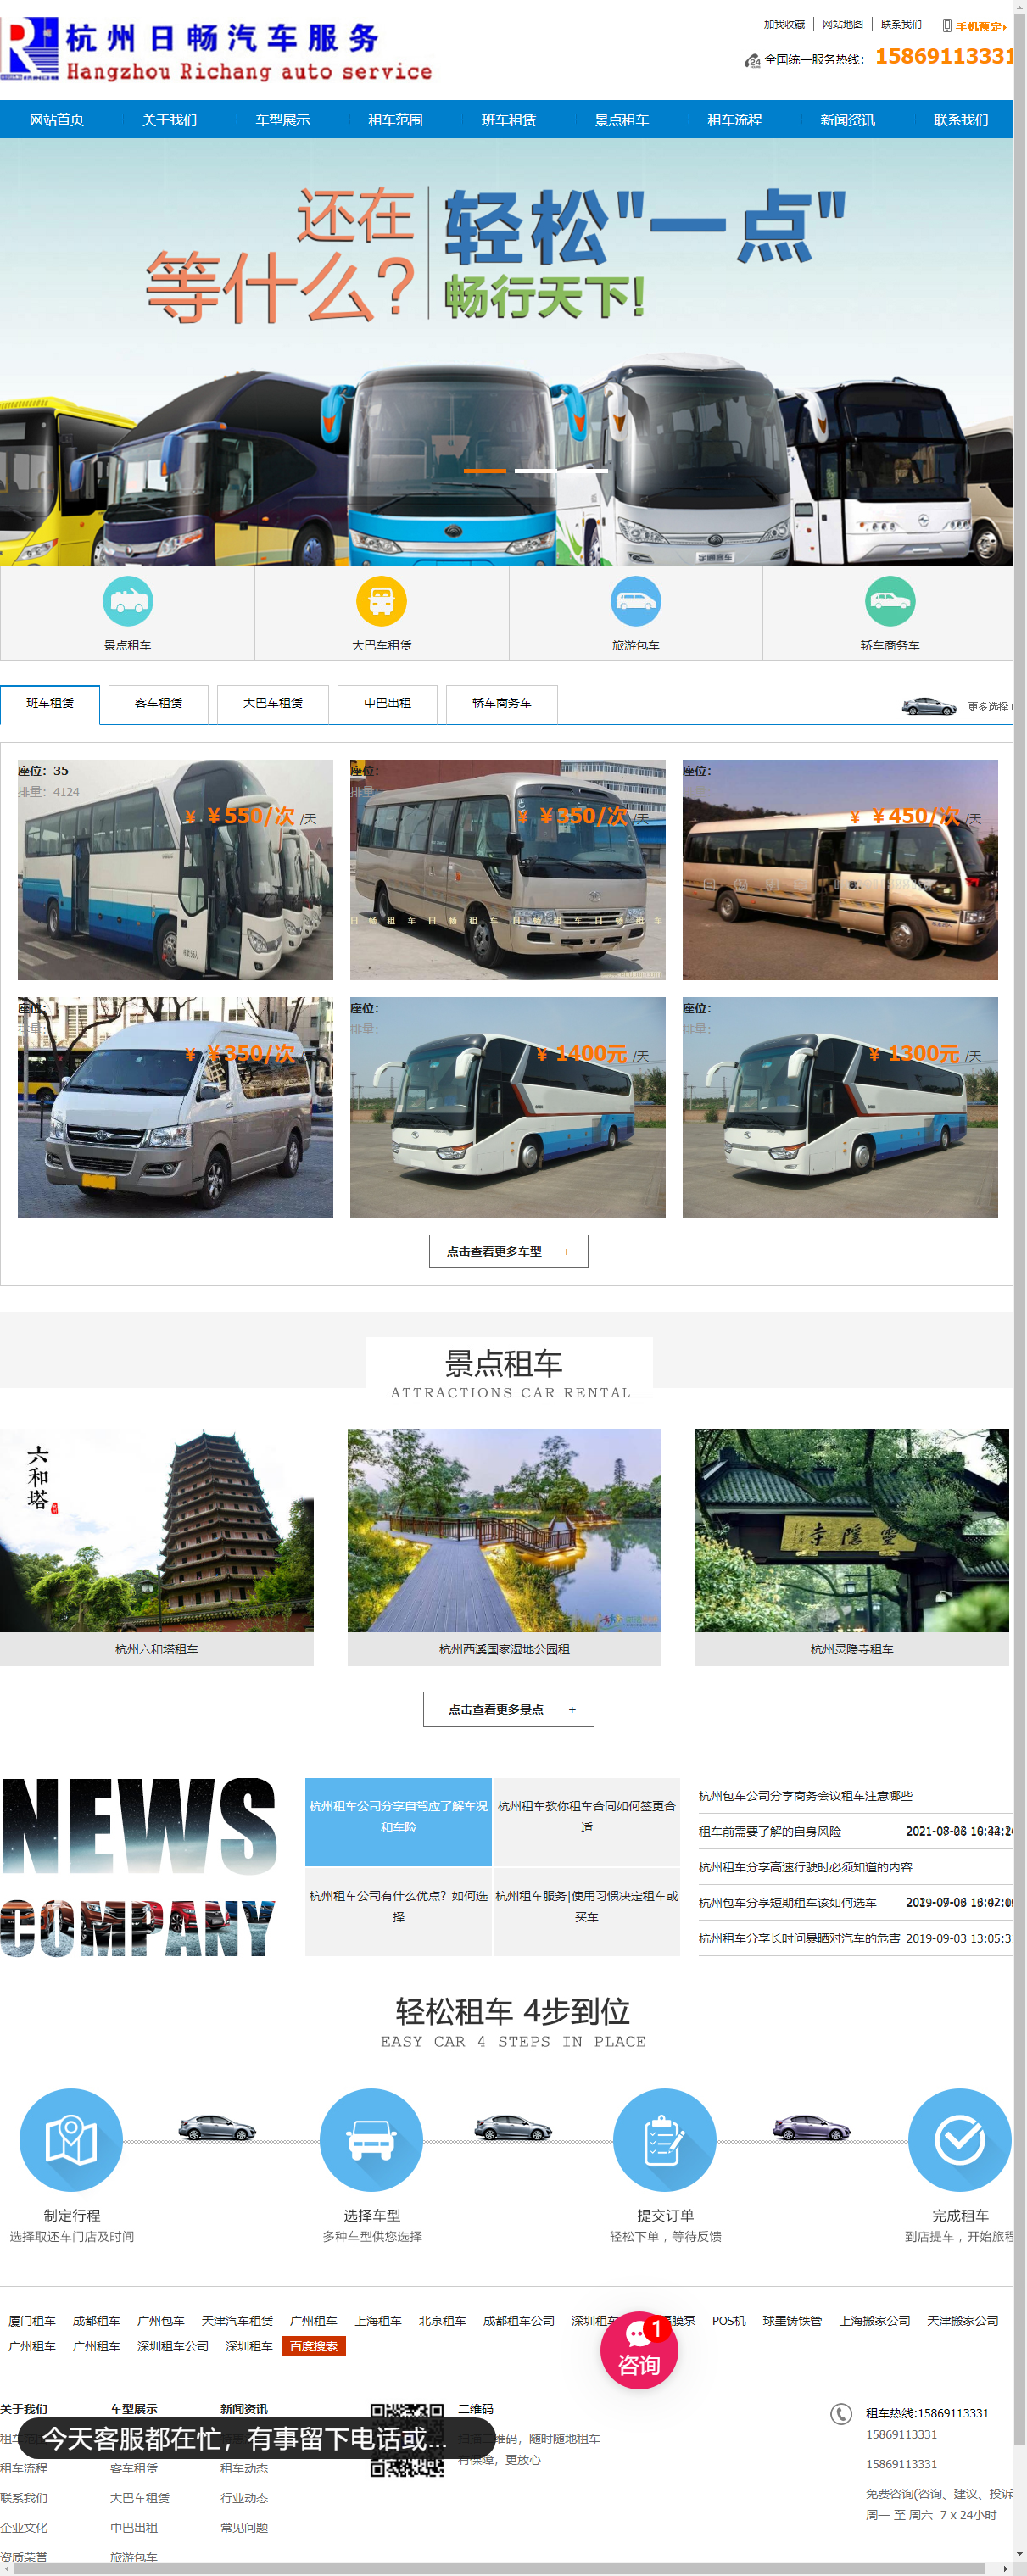 杭州日畅汽车服务有限公司网站案例